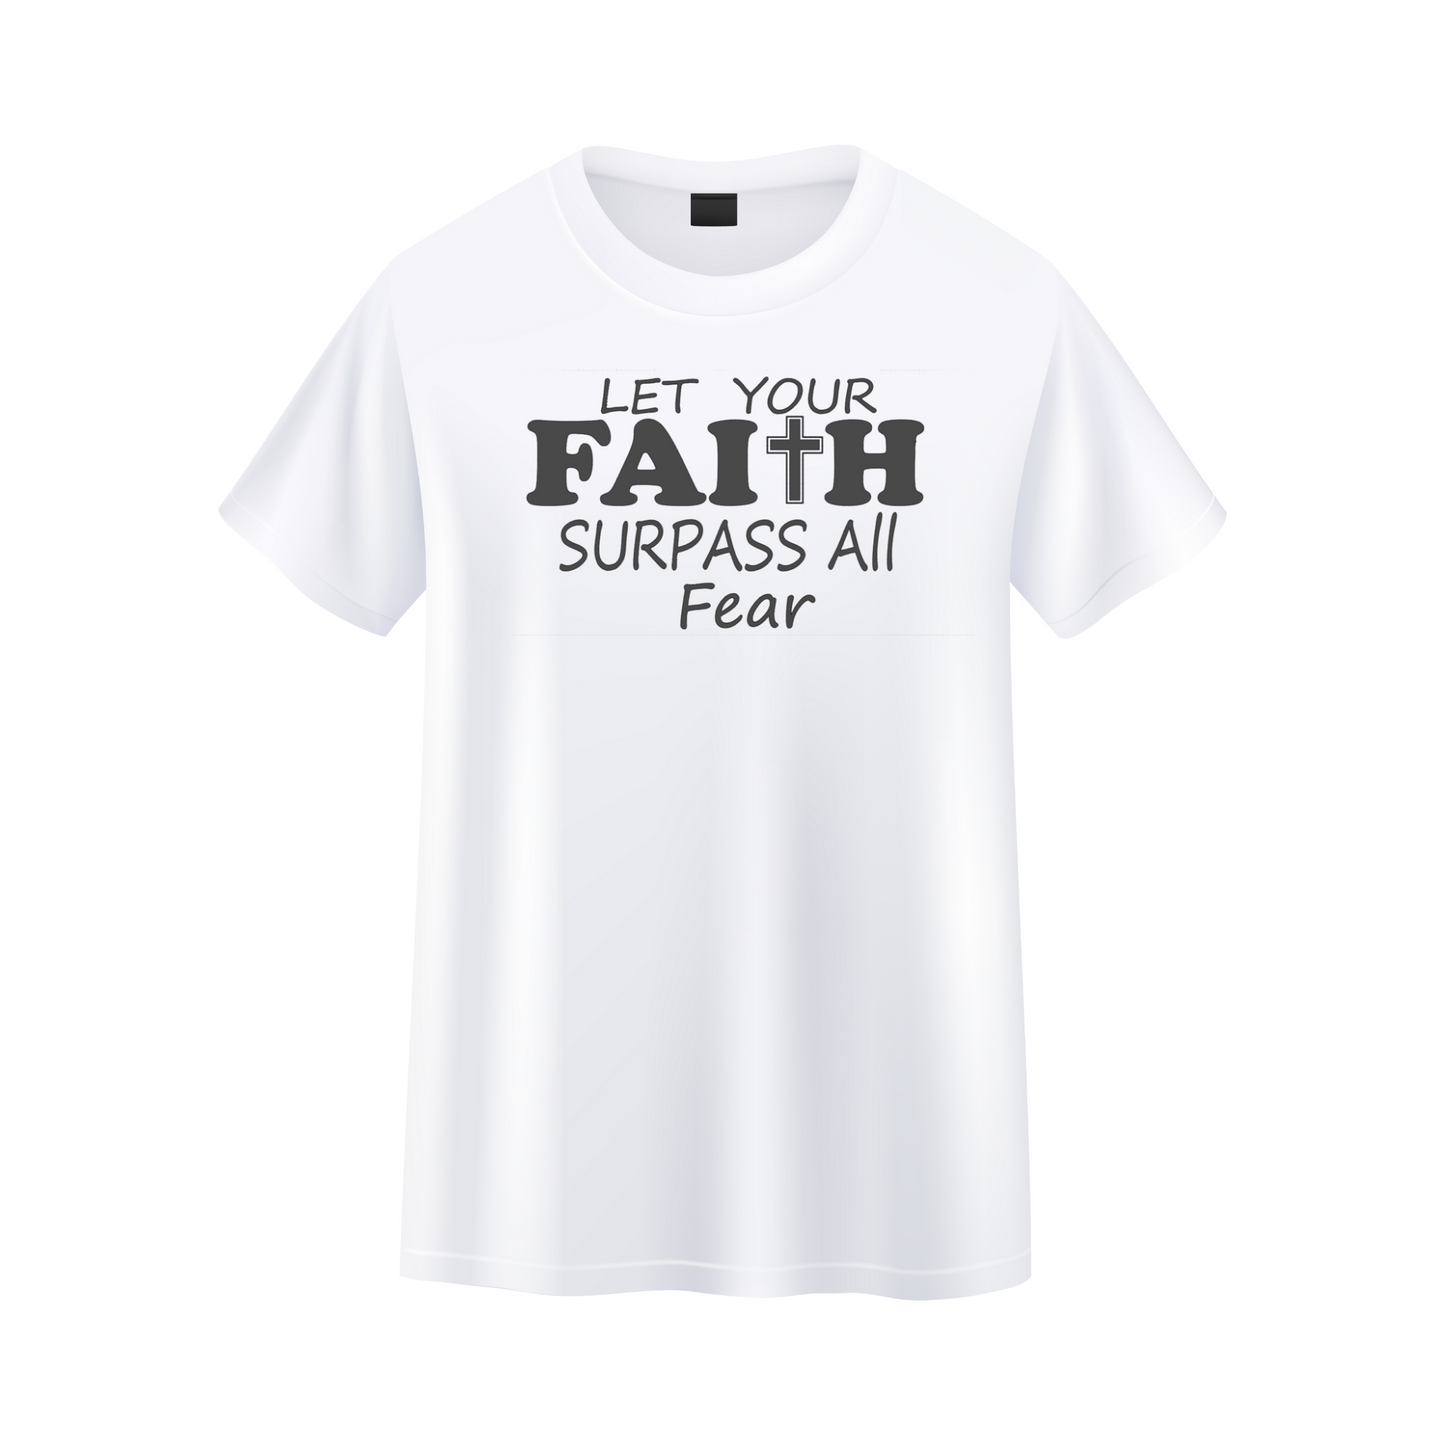 Let Your Faith Surpass All Fear T-shirt